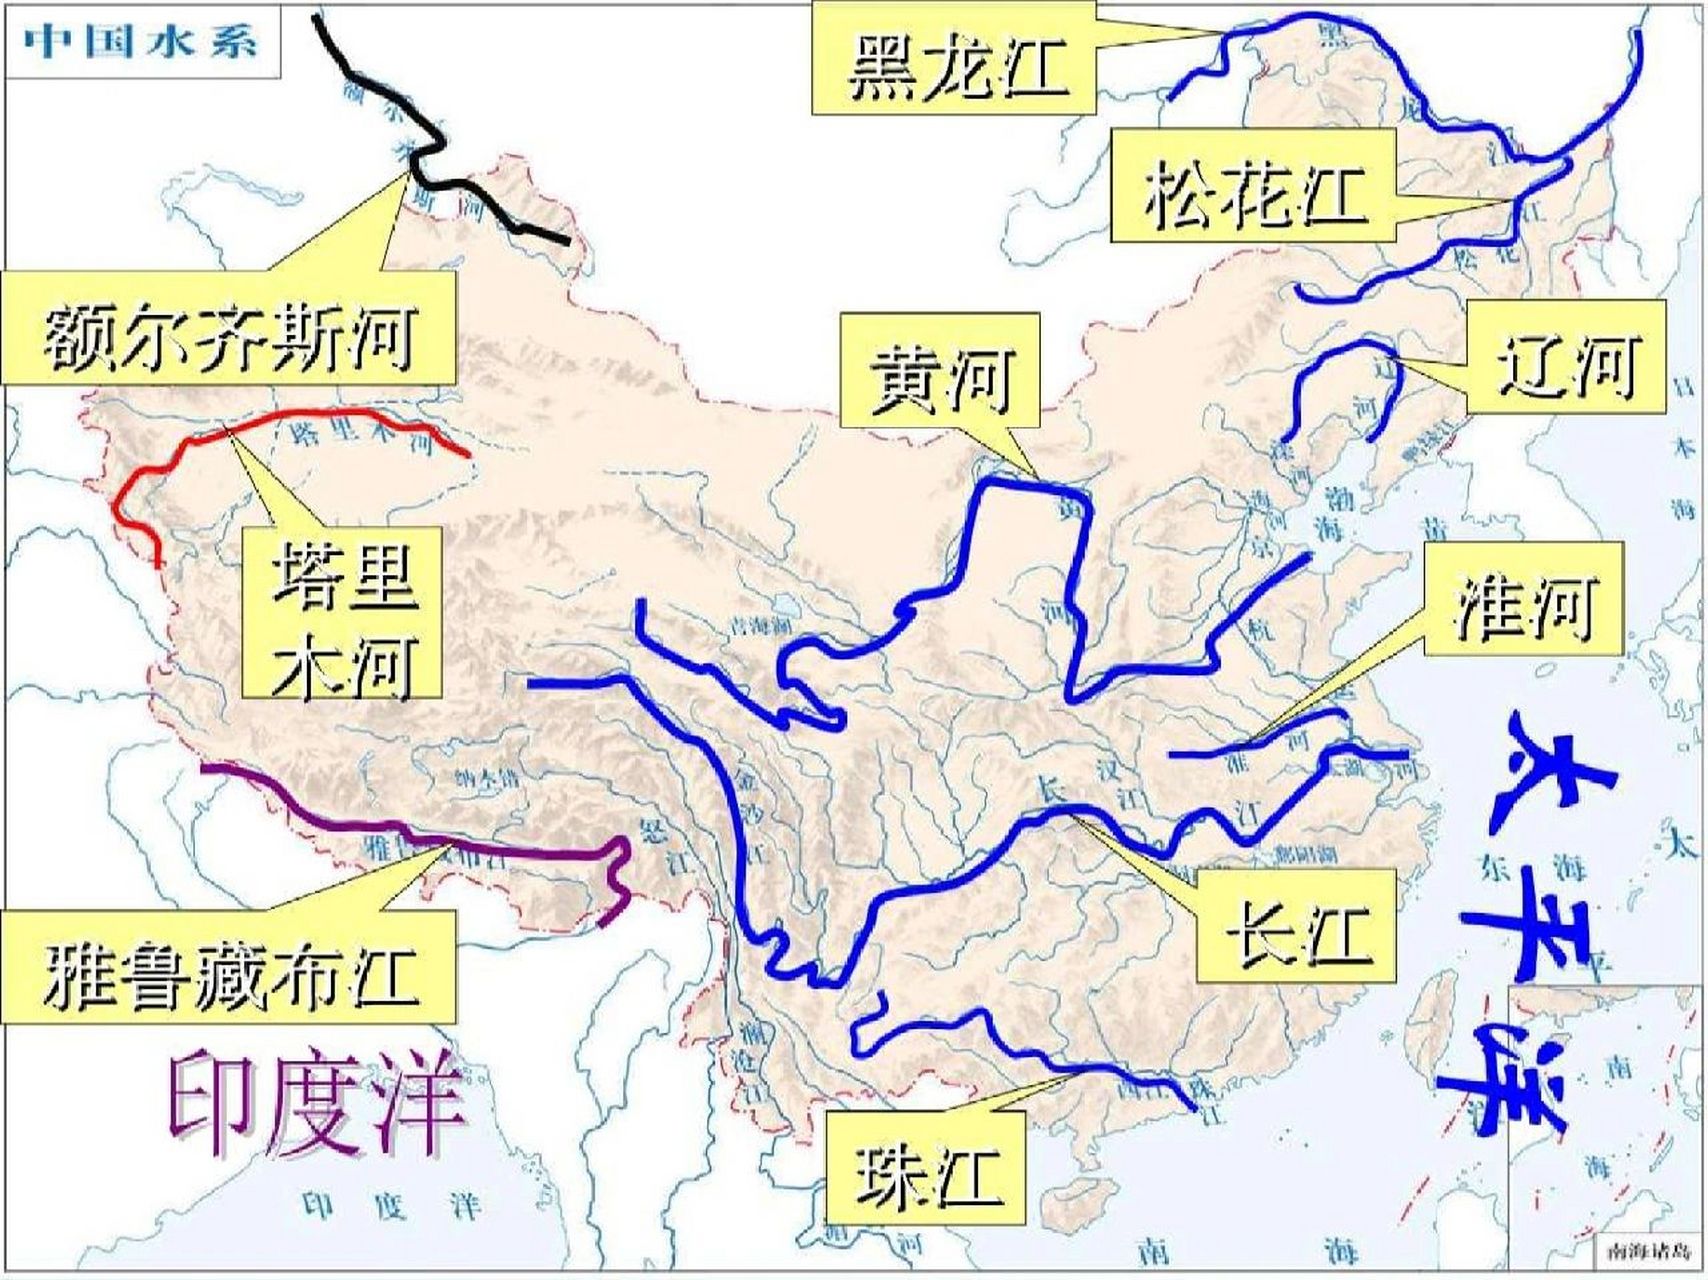 中国江河地图高清图片